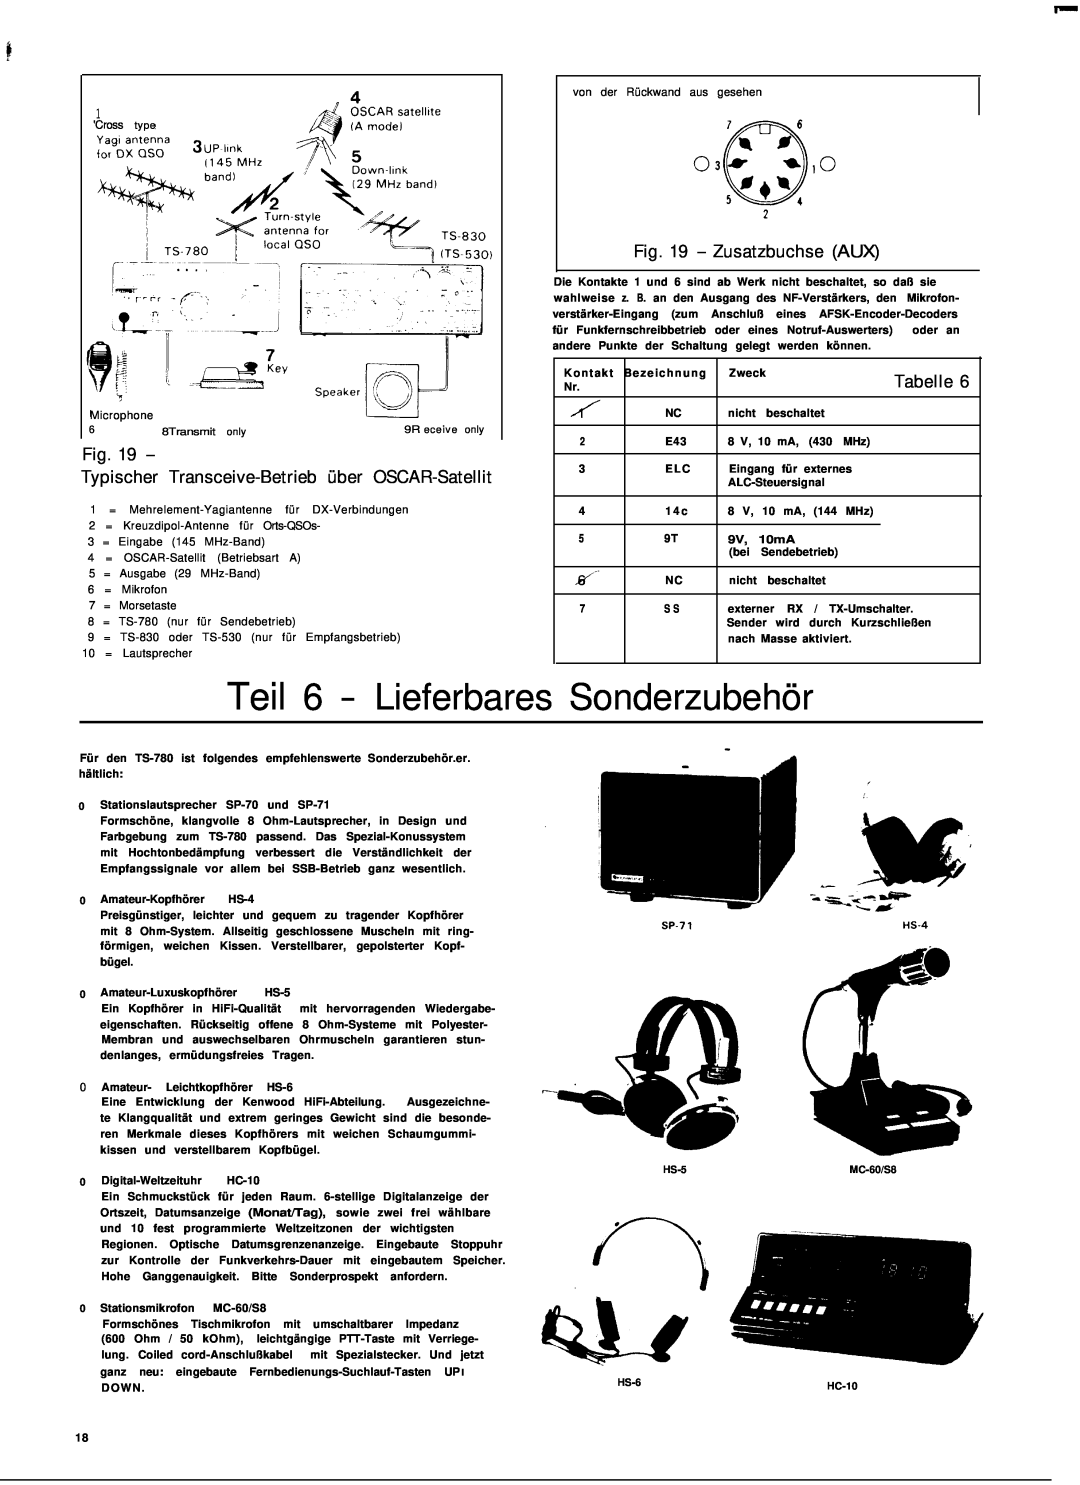 Kenwood TS-780 Teil 6 - Lieferbares Sonderzubehör, Fig, Typischer Transceive-Betriebüber OSCAR-Satellit, Zusatzbuchse AUX 